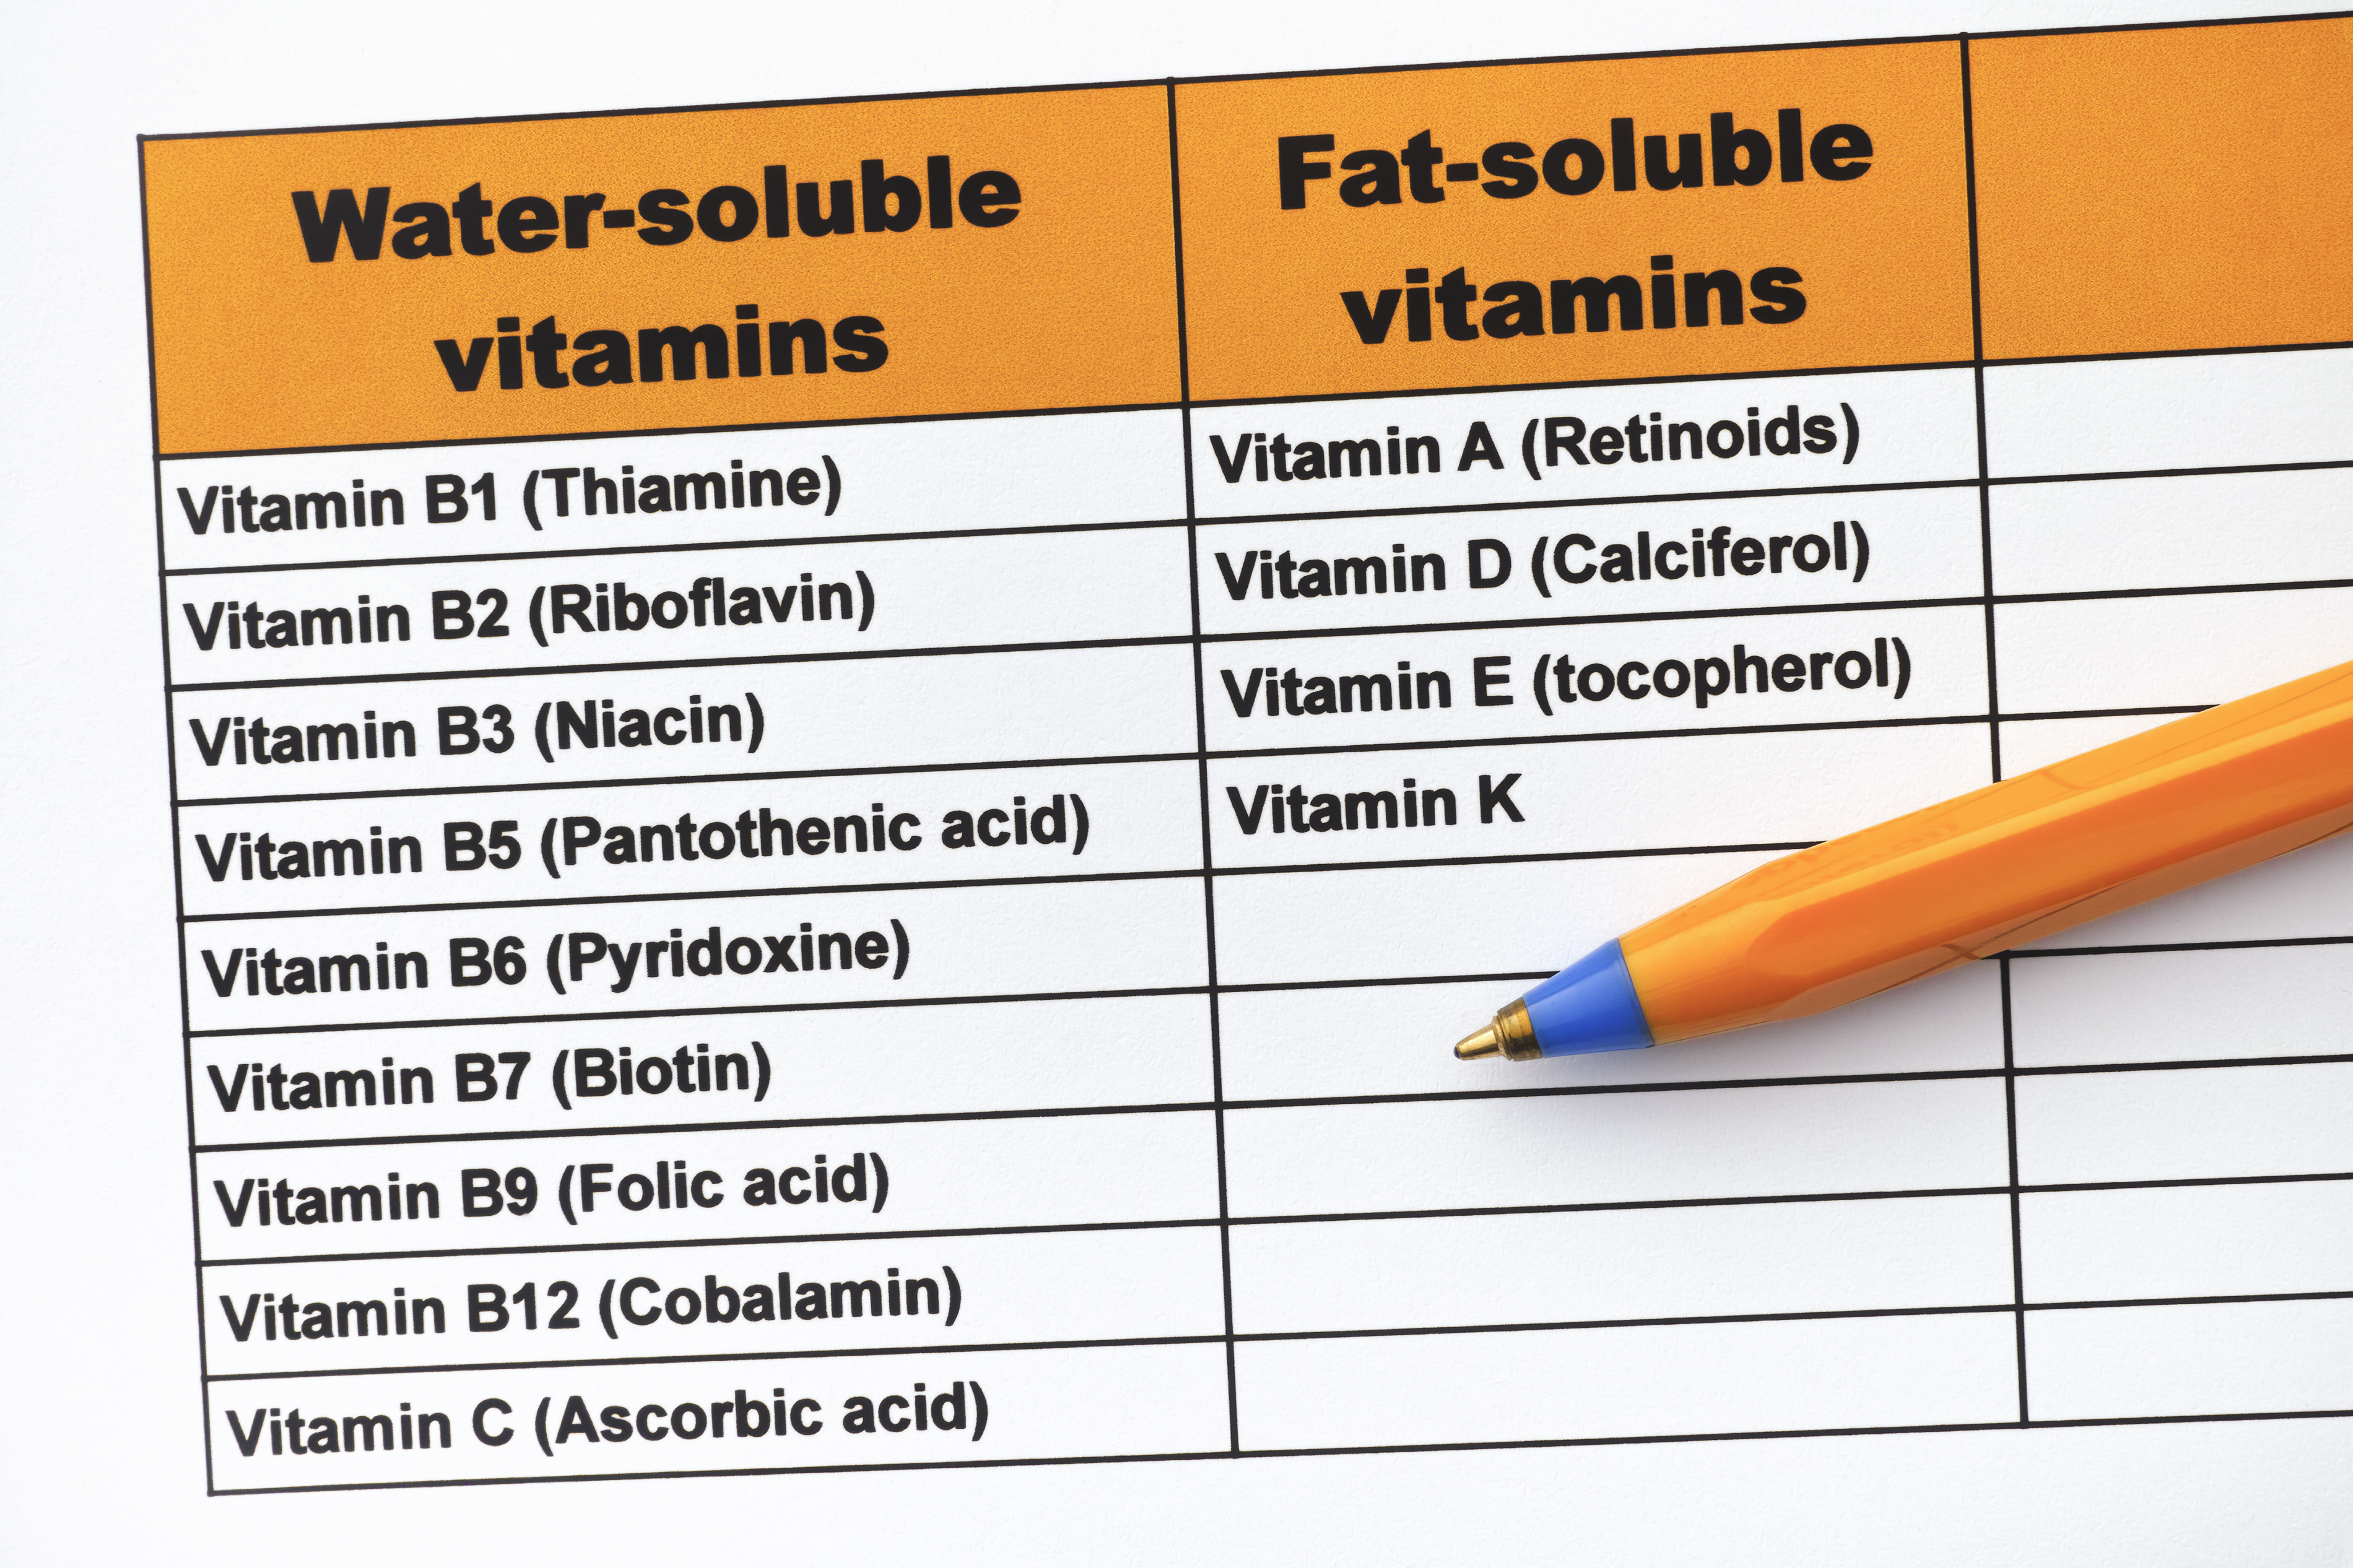 rozdelenie vitamínov na rozpustné v tukoch a rozpustné vo vode